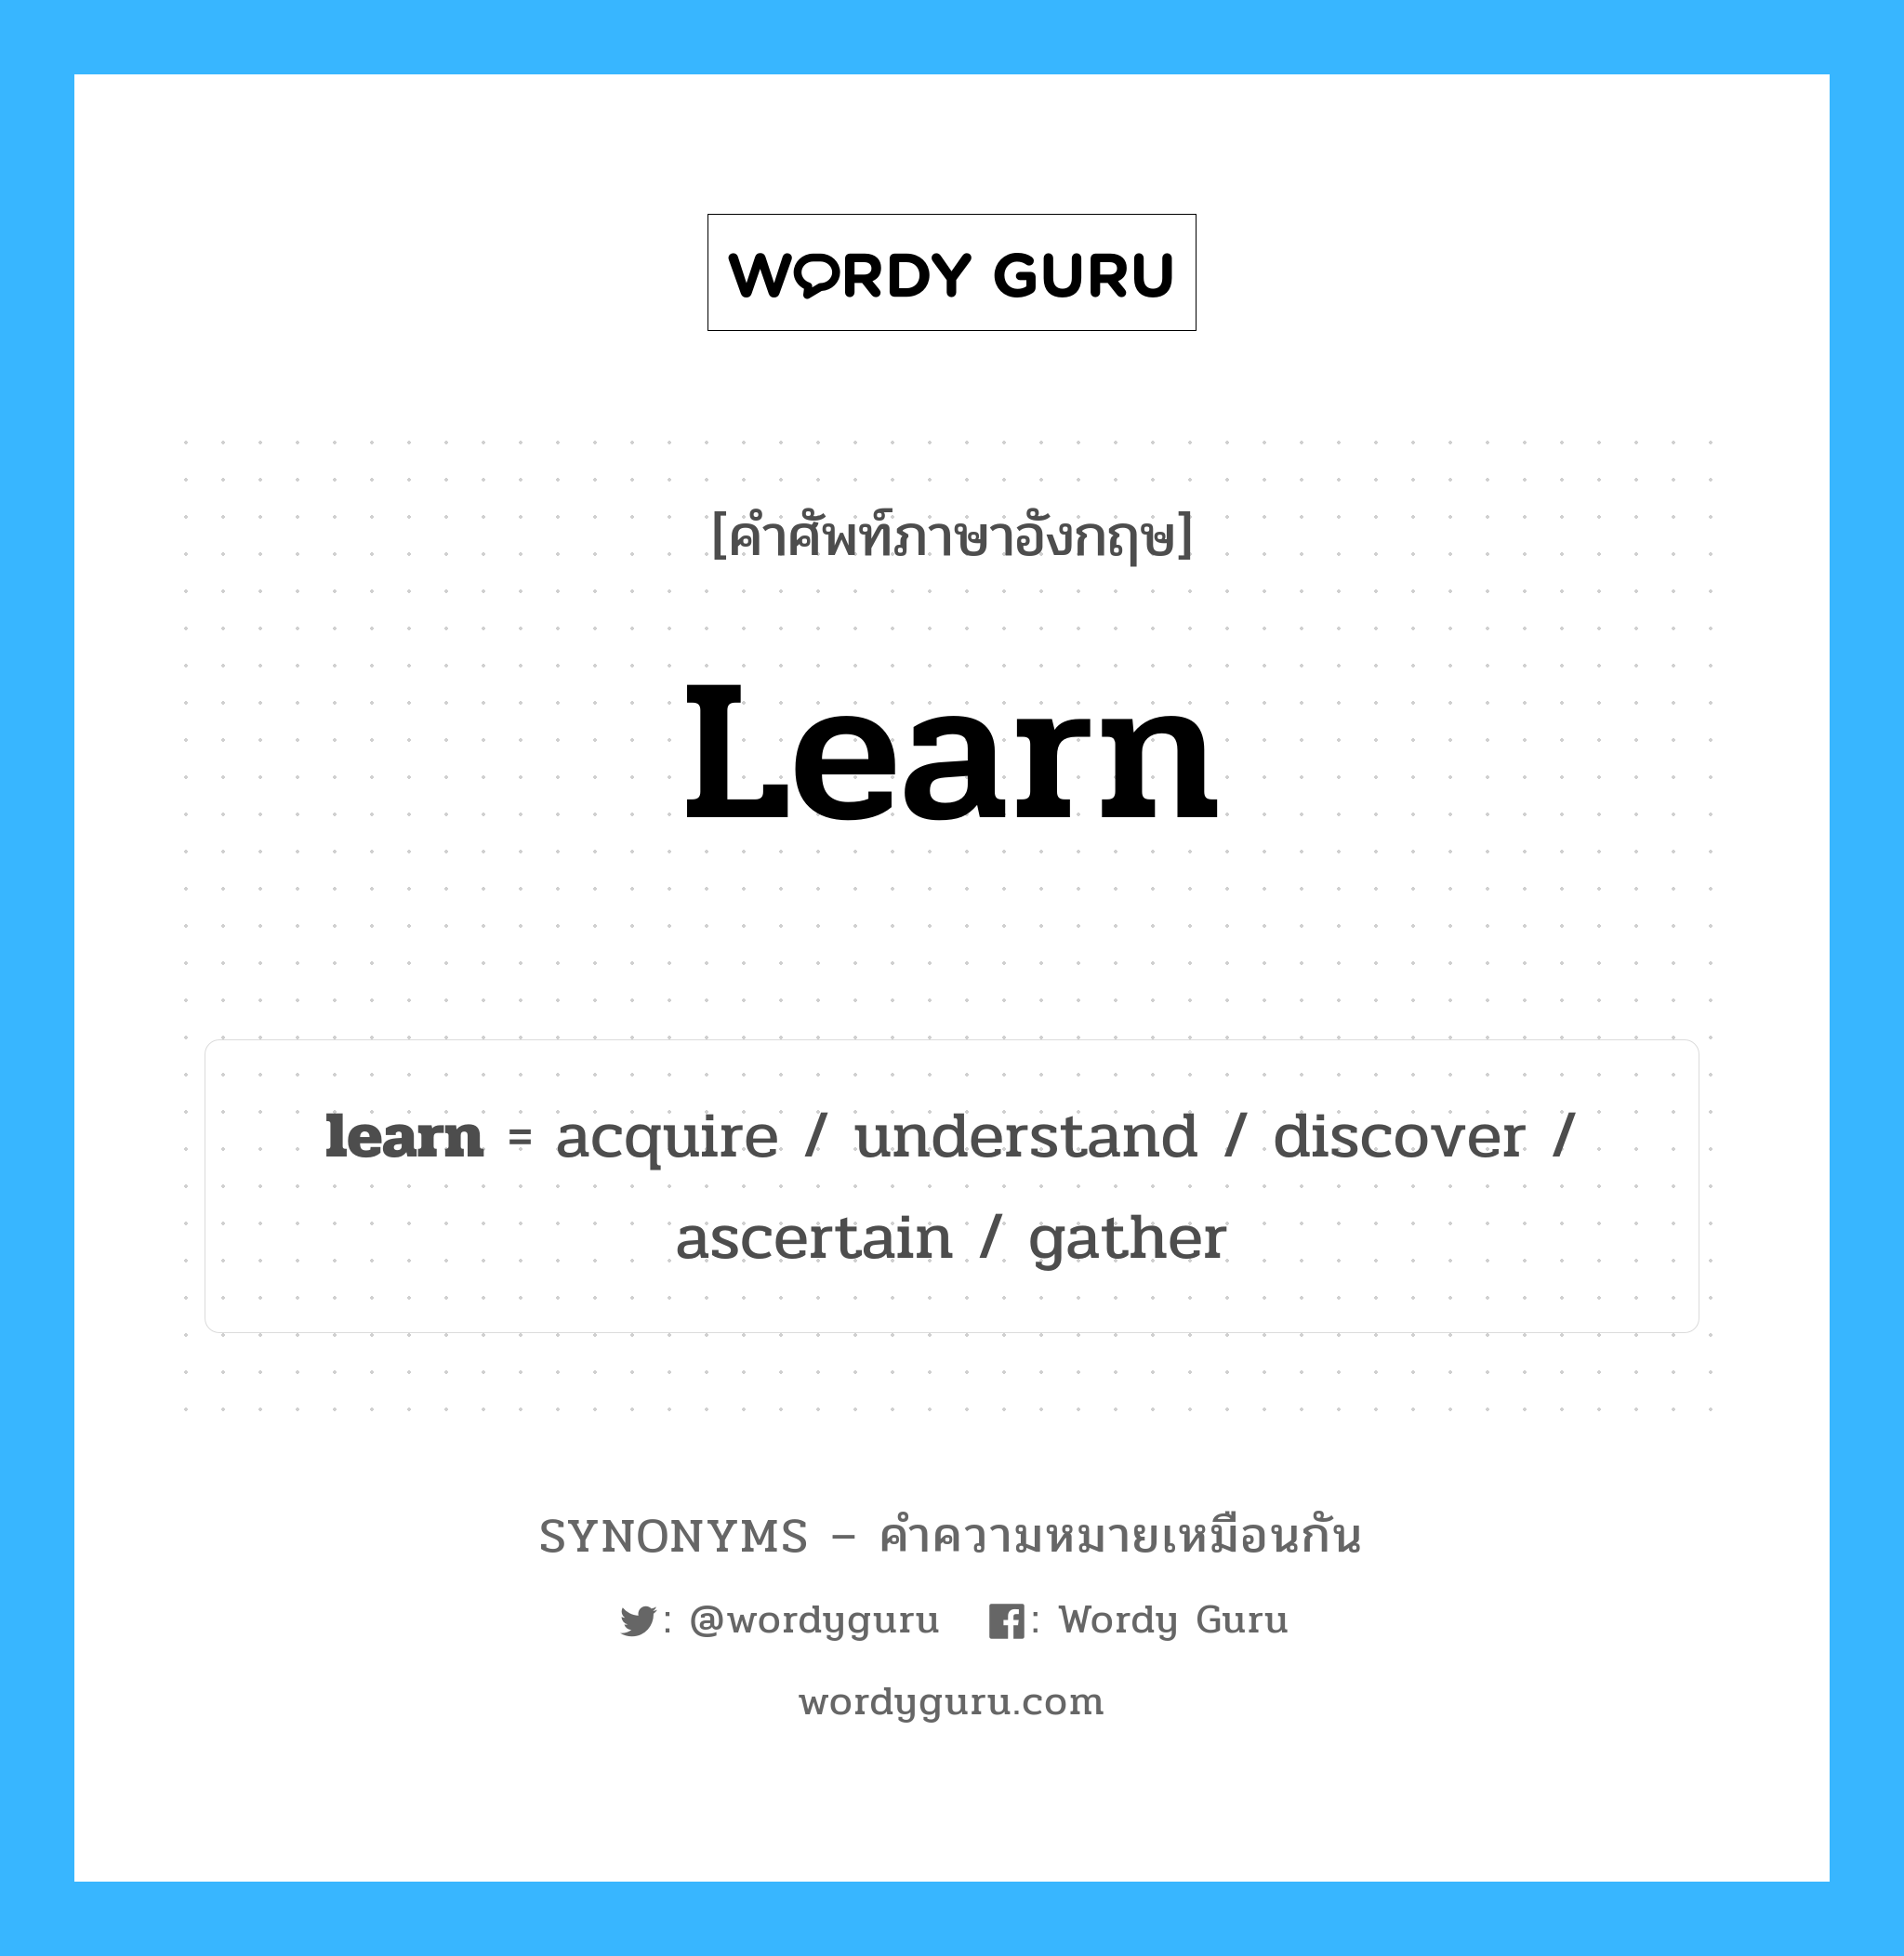 acquire เป็นหนึ่งใน learn และมีคำอื่น ๆ อีกดังนี้, คำศัพท์ภาษาอังกฤษ acquire ความหมายคล้ายกันกับ learn แปลว่า ได้รับ หมวด learn